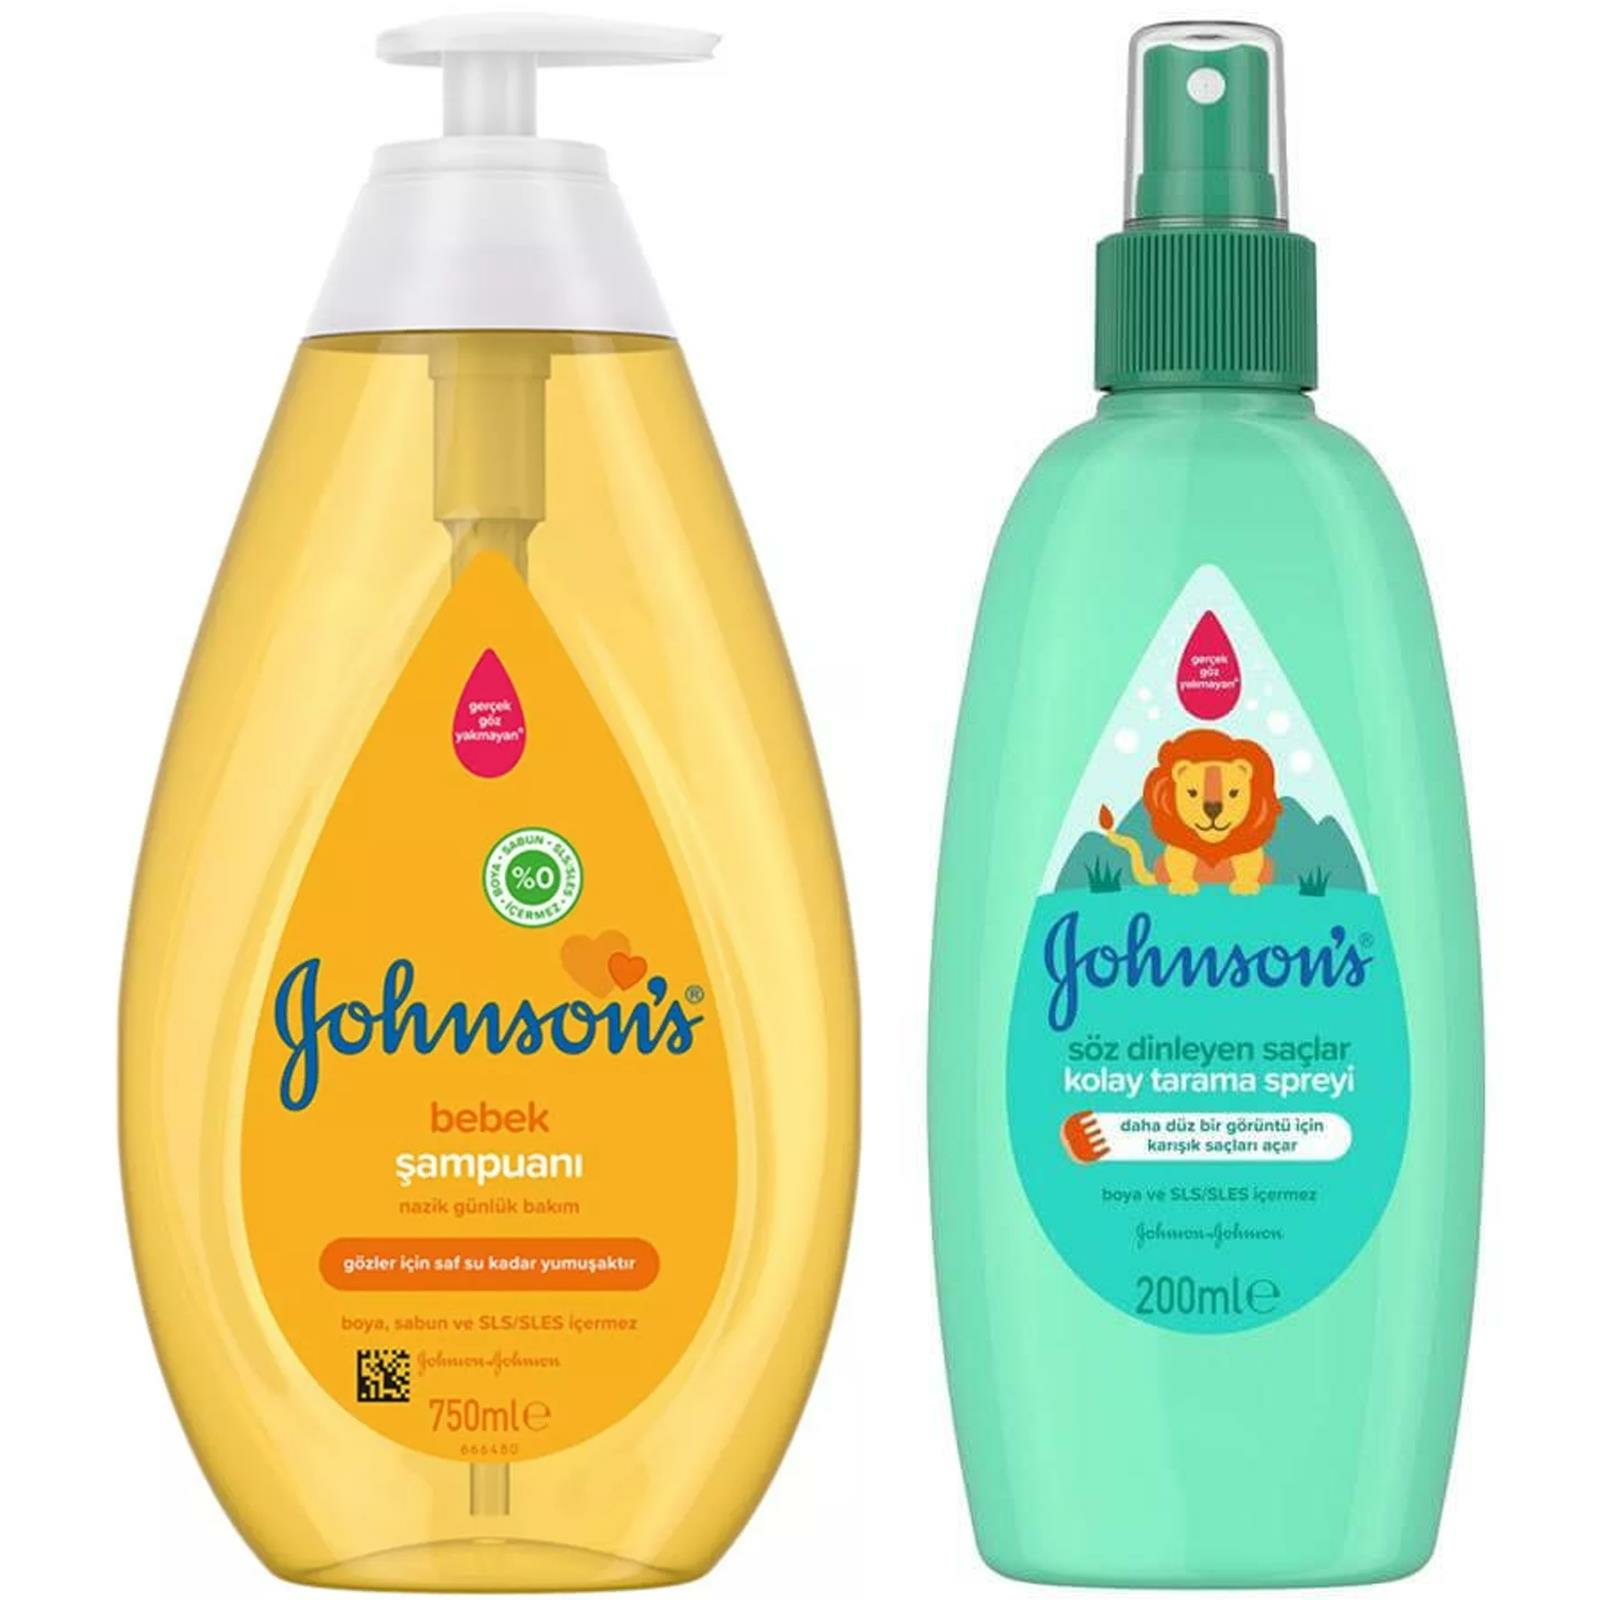 Johnsons Baby Kolay Tarama Spreyi Söz Dinleyen Saçlar 200 ml + Johnsons Bebek Şampuanı 750 ml